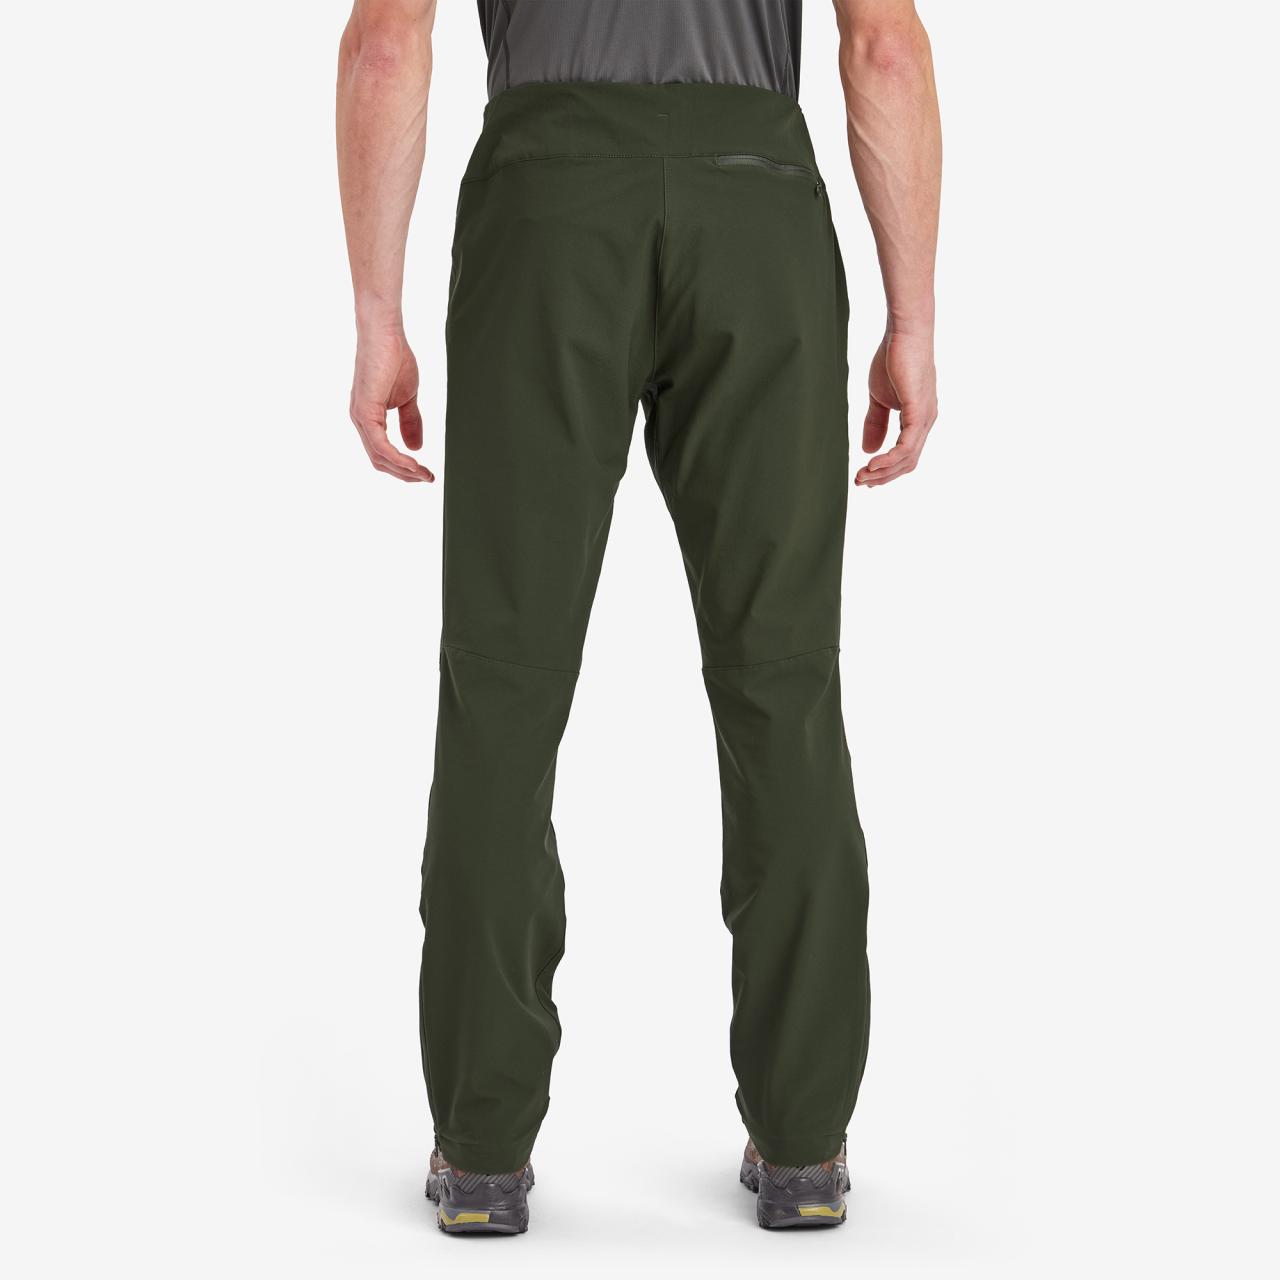 TENACITY PANTS REG LEG-OAK GREEN-36/XL pánské kalhoty zelené